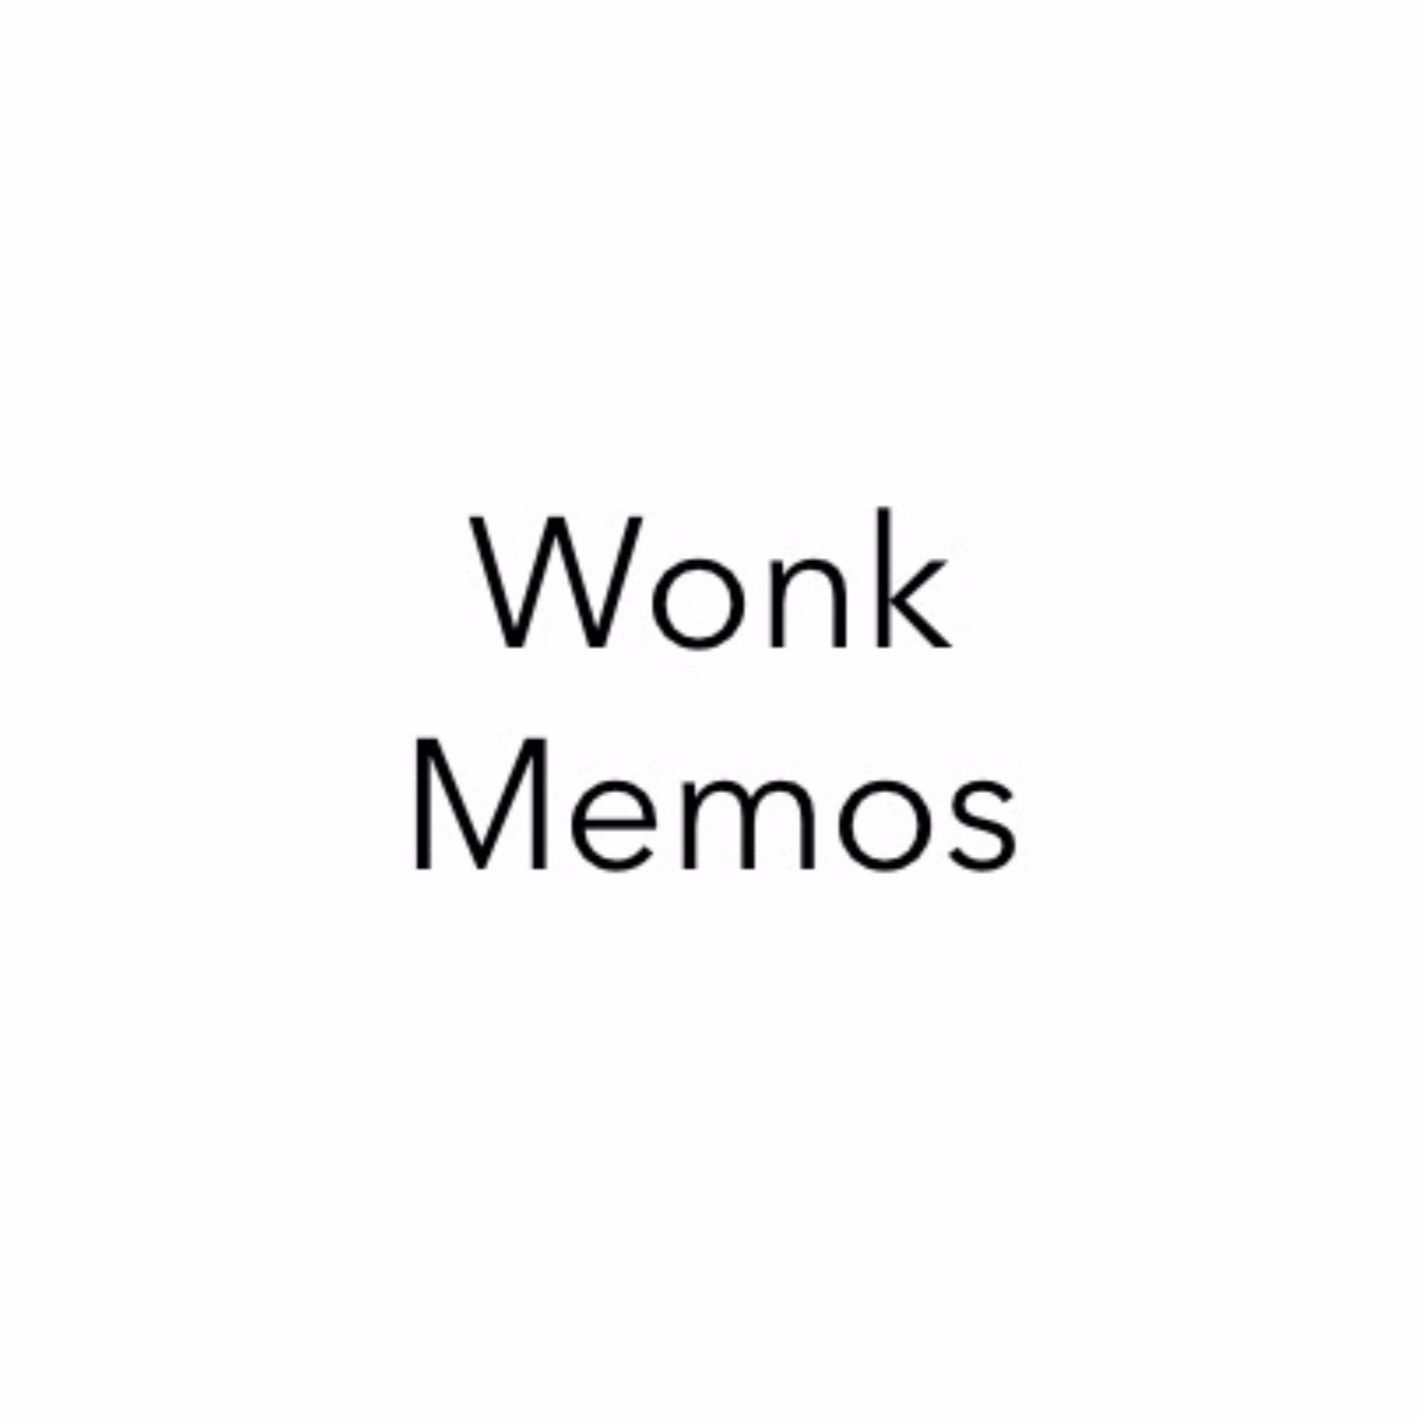 Wonk Memos